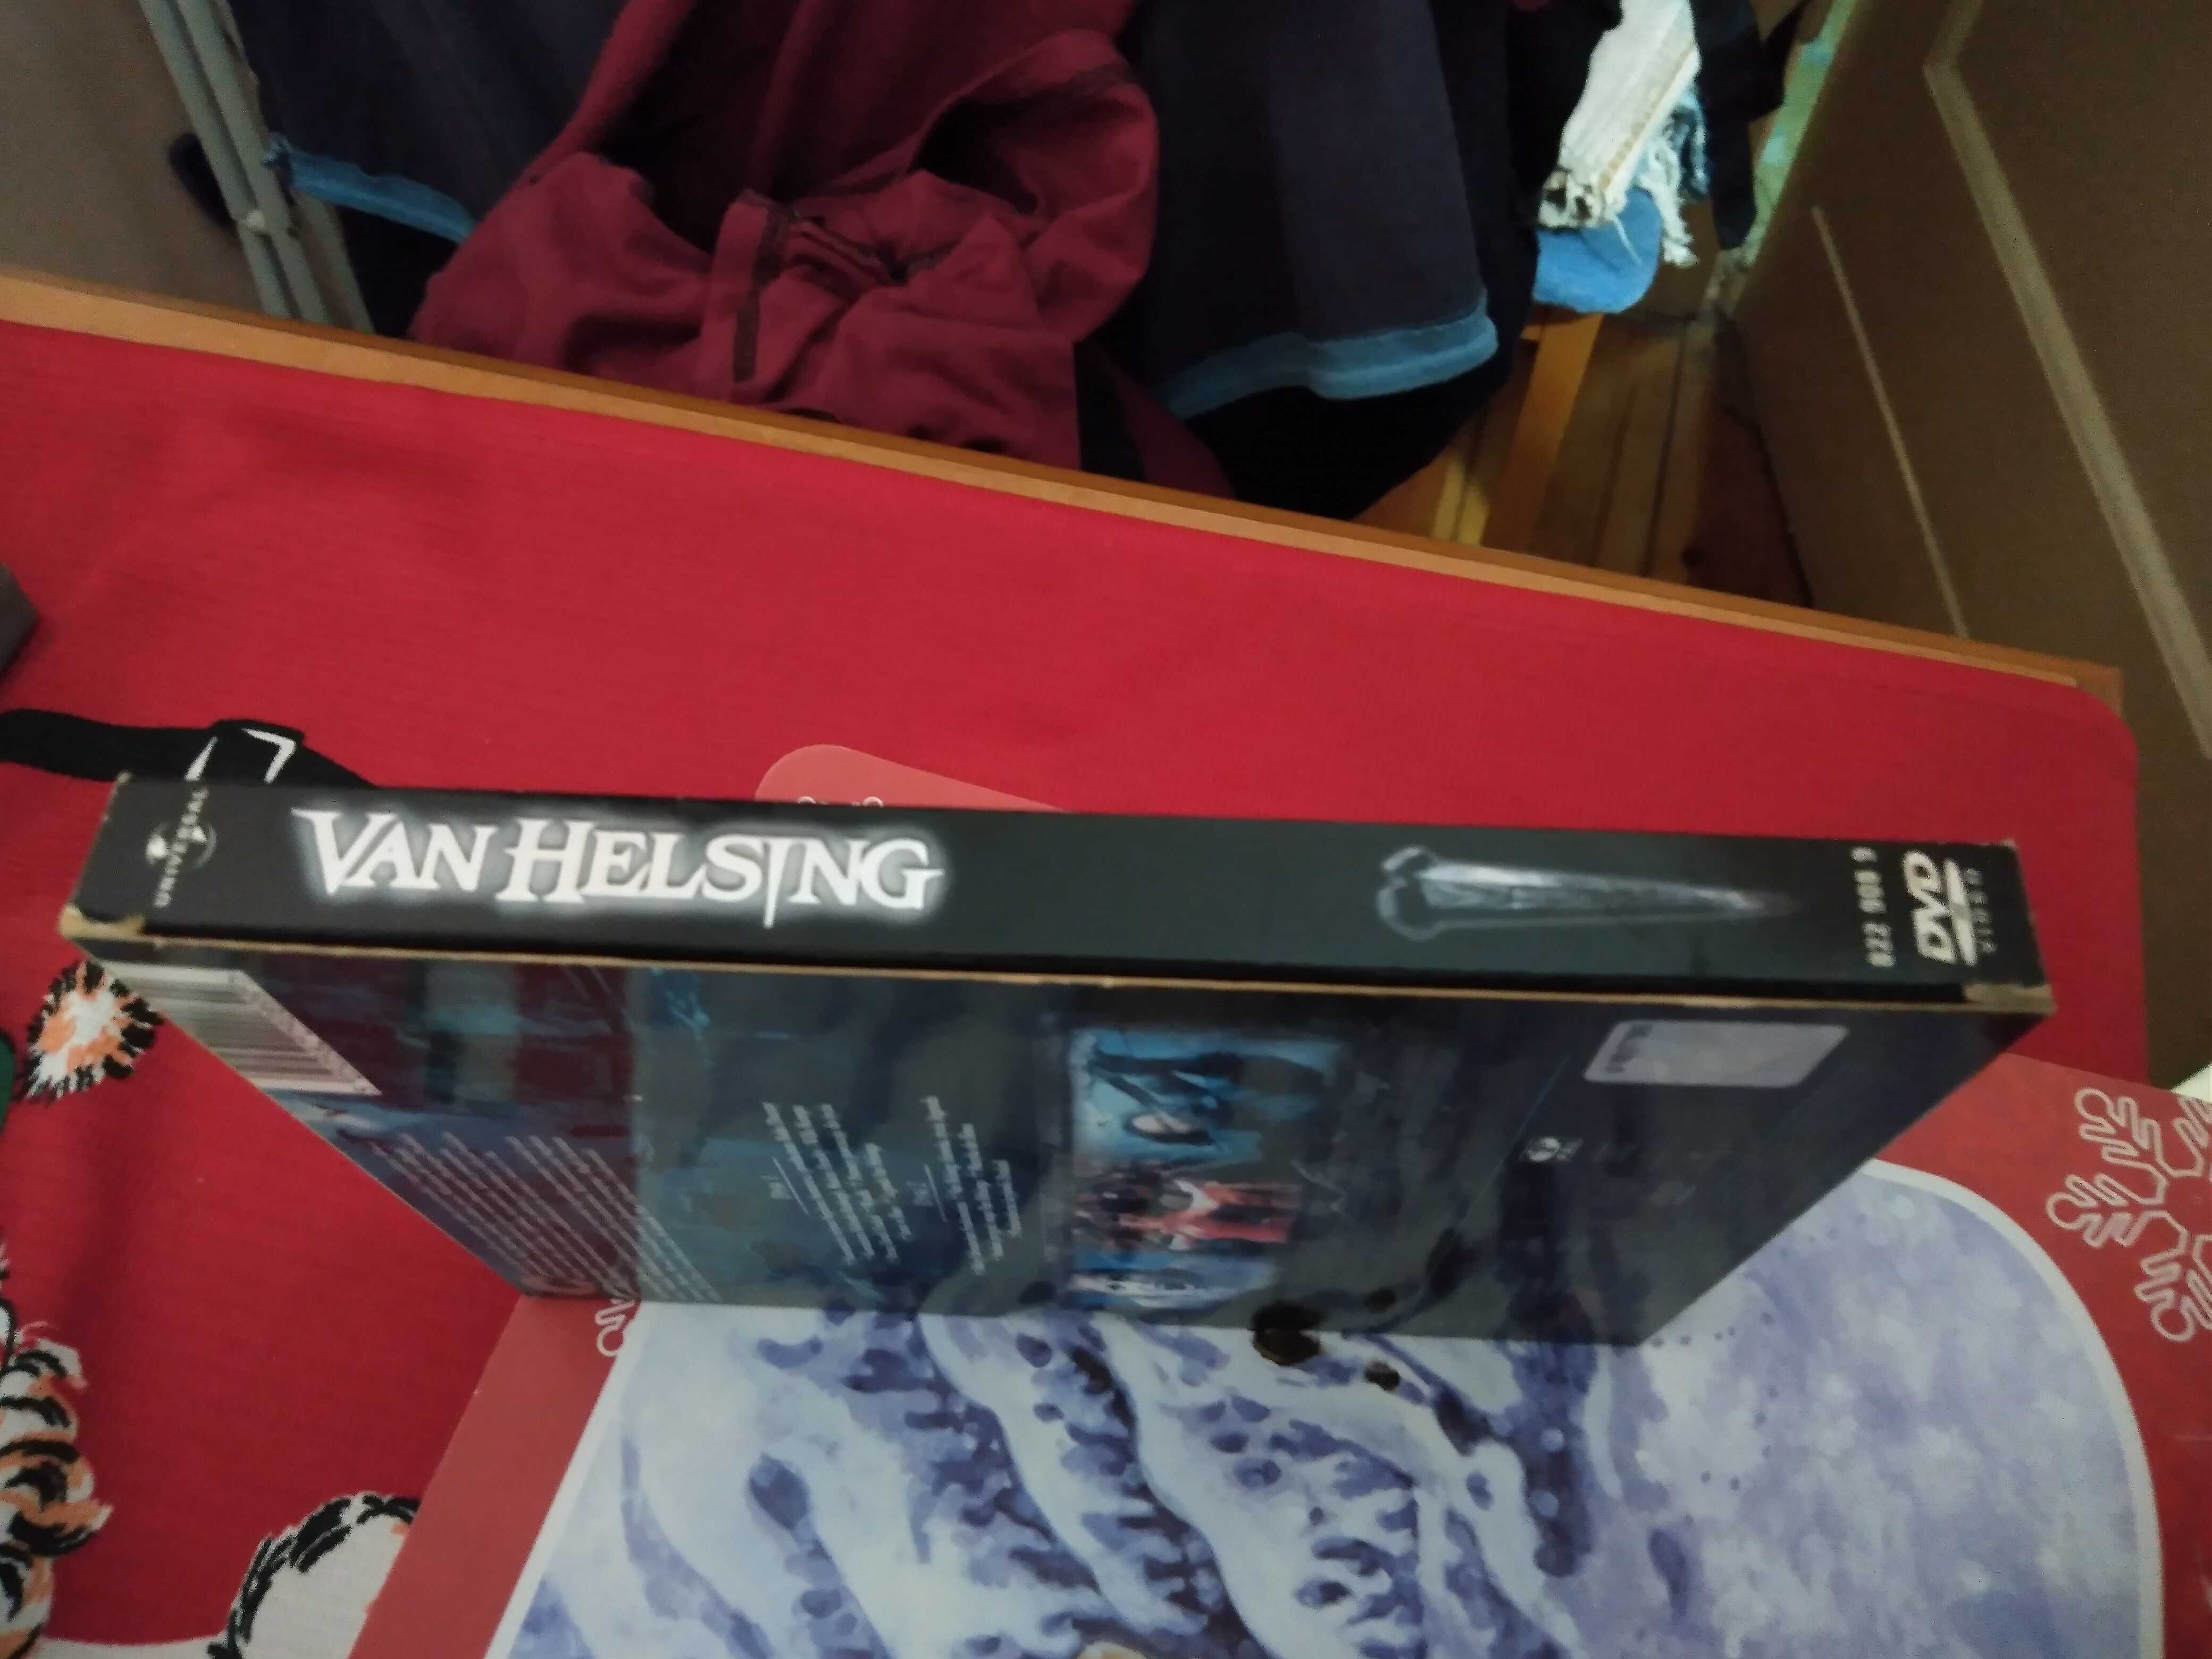 Van Helsing 2DVD /Wydanie specjalne/